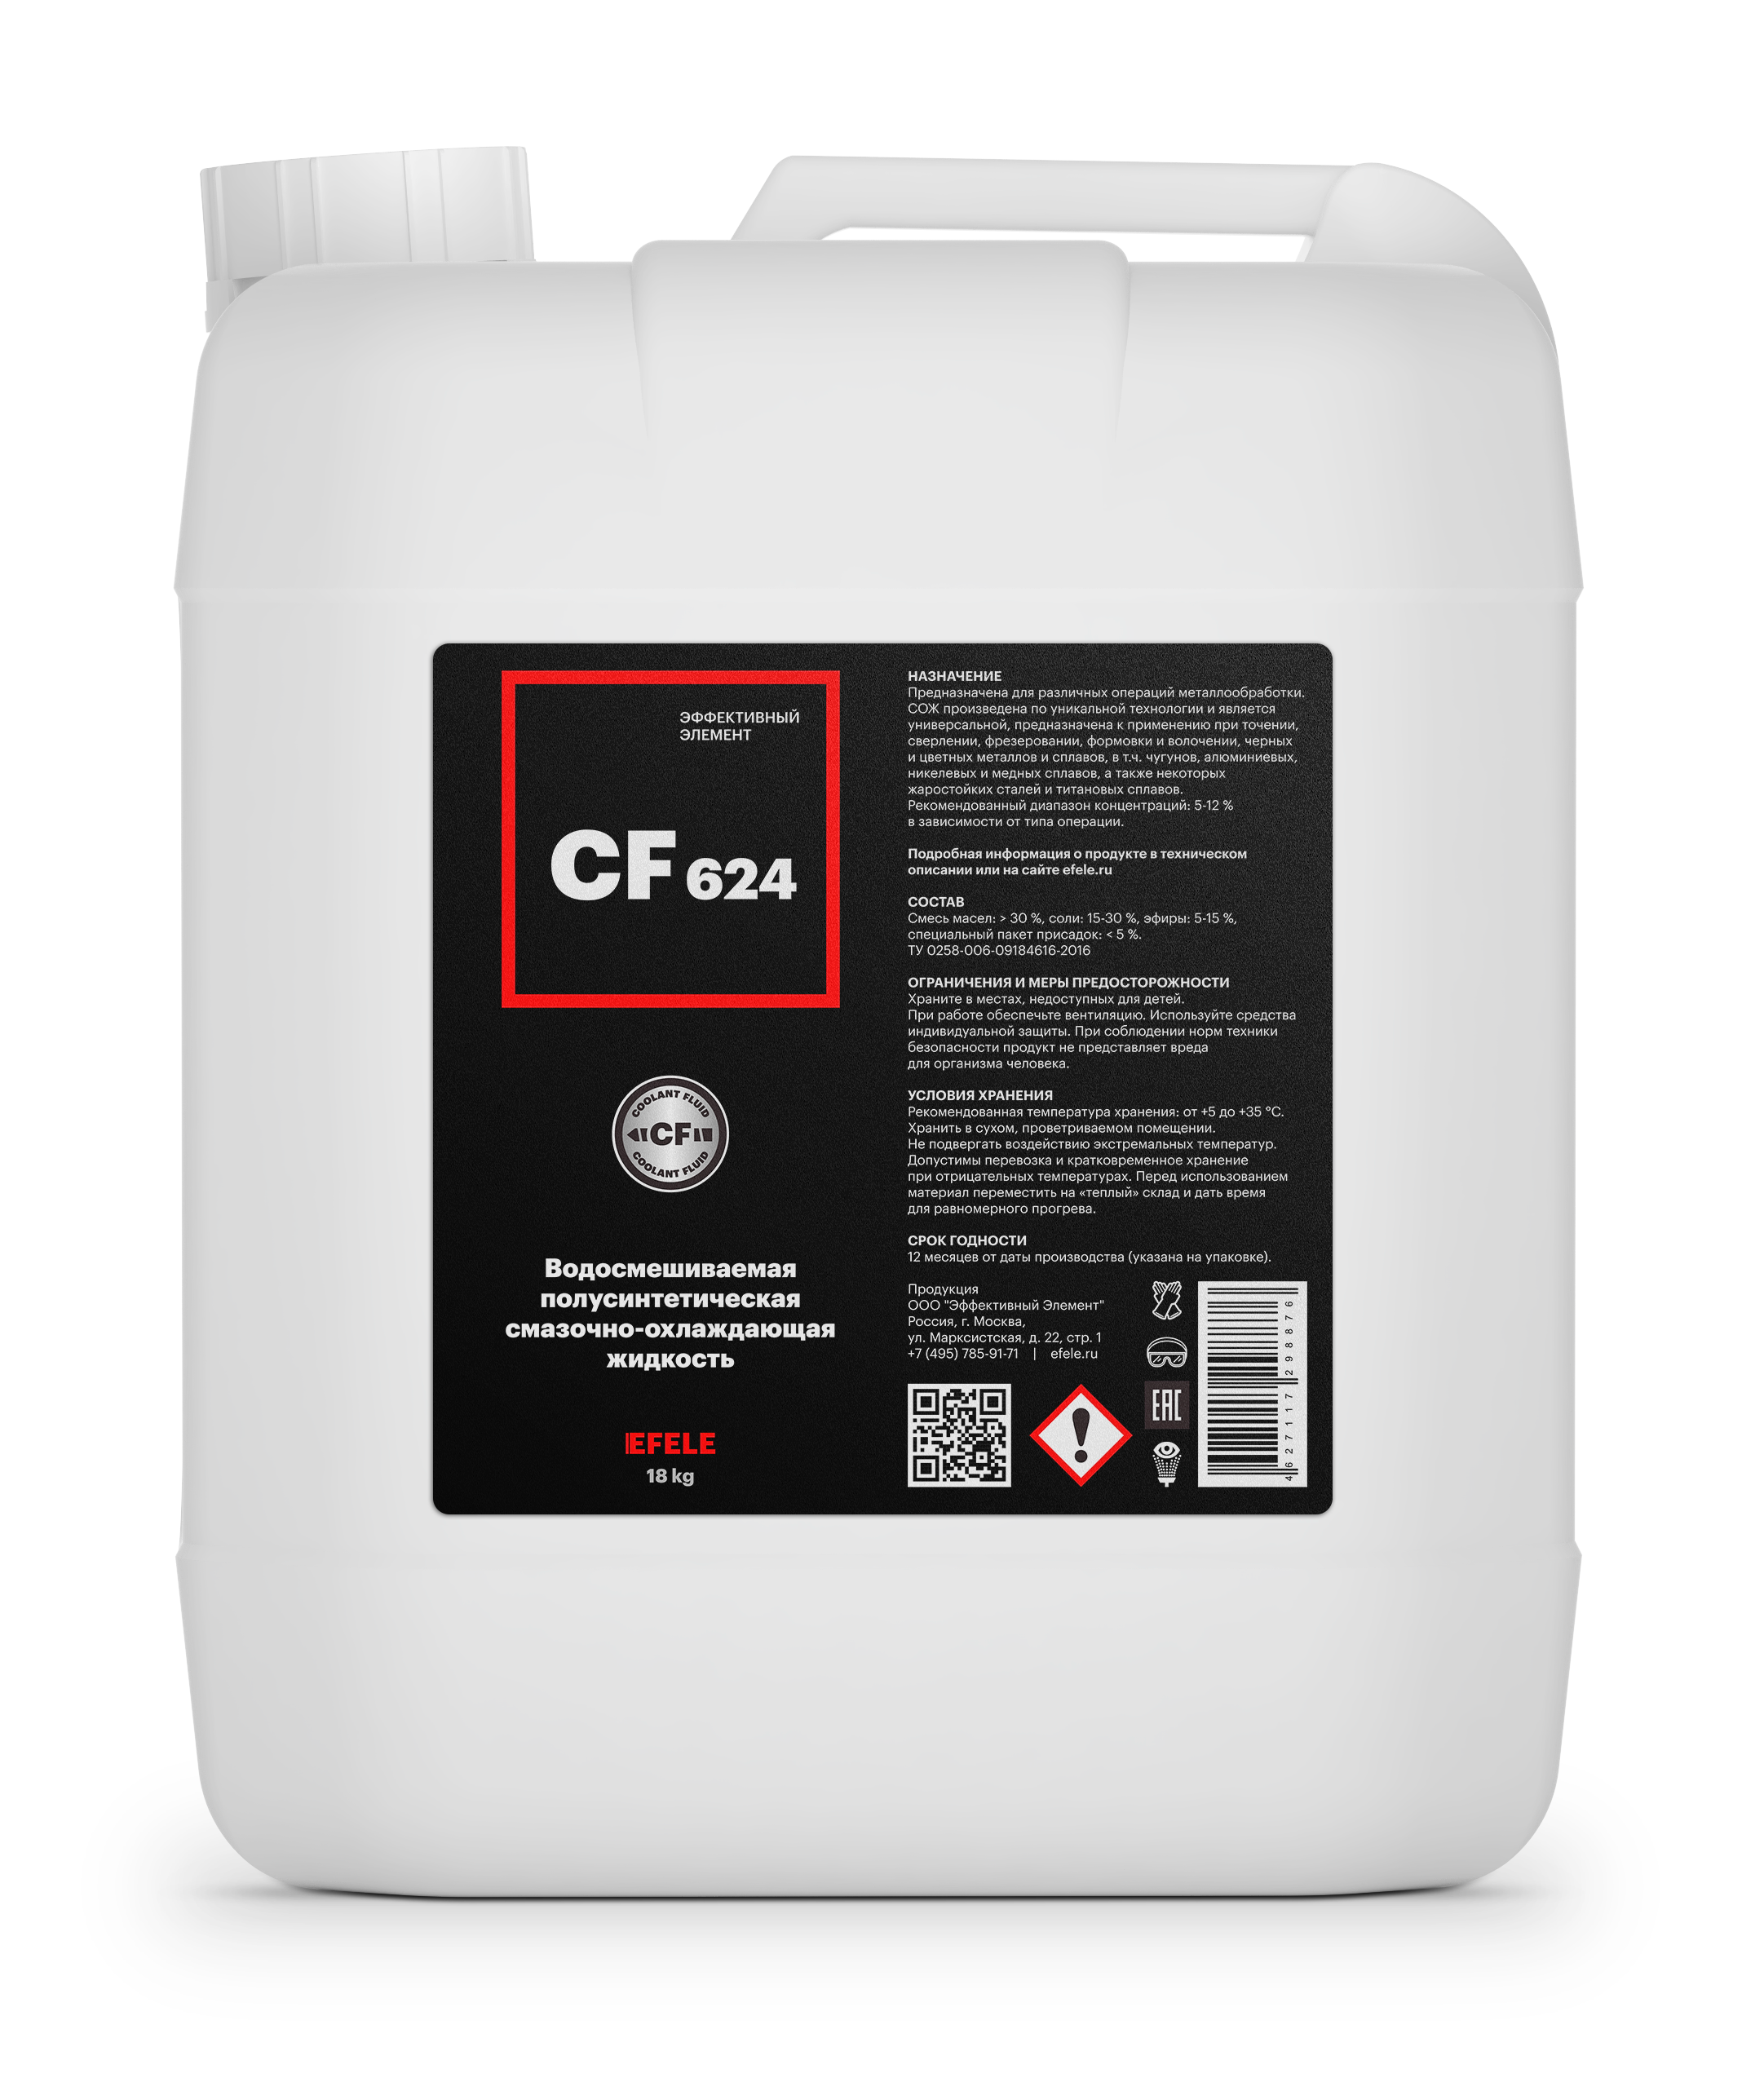 Полусинтетическая водорастворимая СОЖ EFELE CF-624